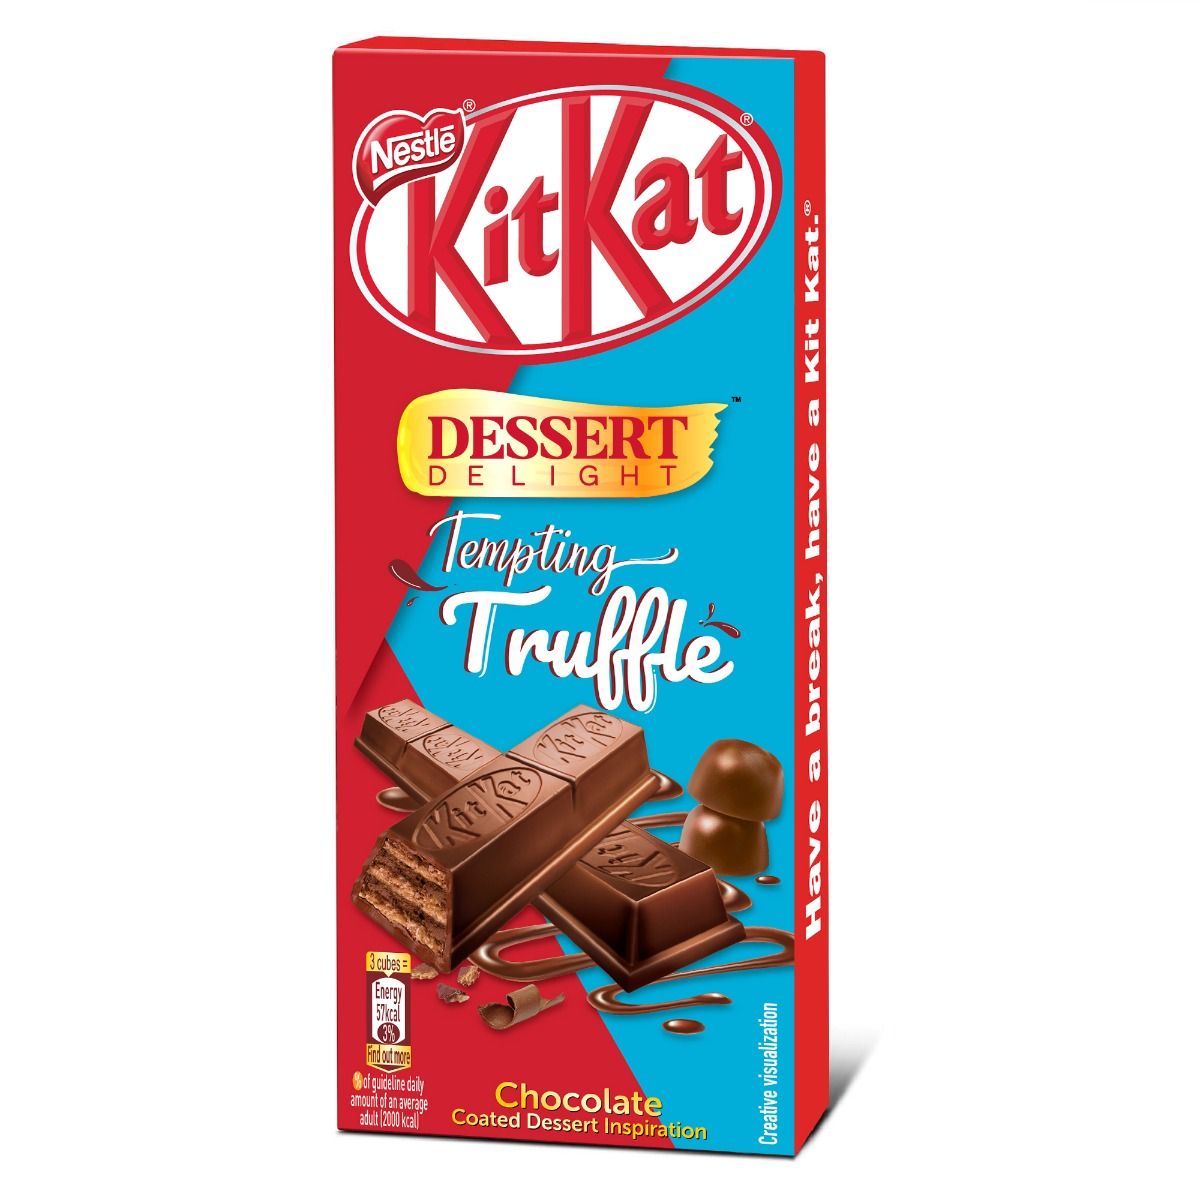 Buy Nestle Kitkat Dessert Delight Tempting Truffle Chocolate Bar, 50 gm Online